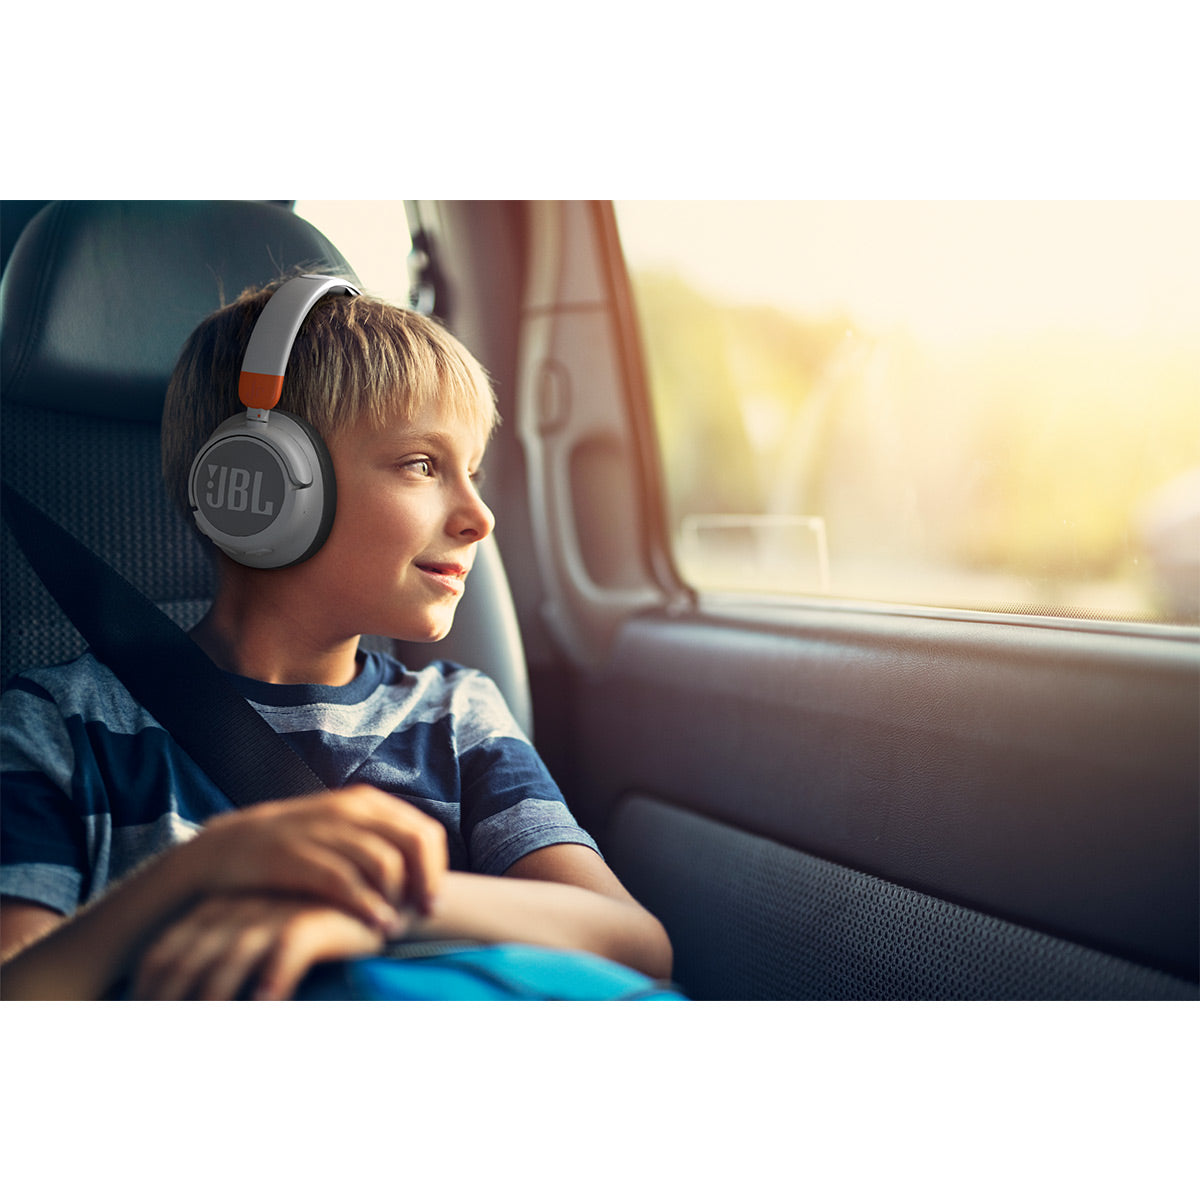 JBL JR460NC Wireless Over-Ear Noise Canceling Kids Headphones (White)